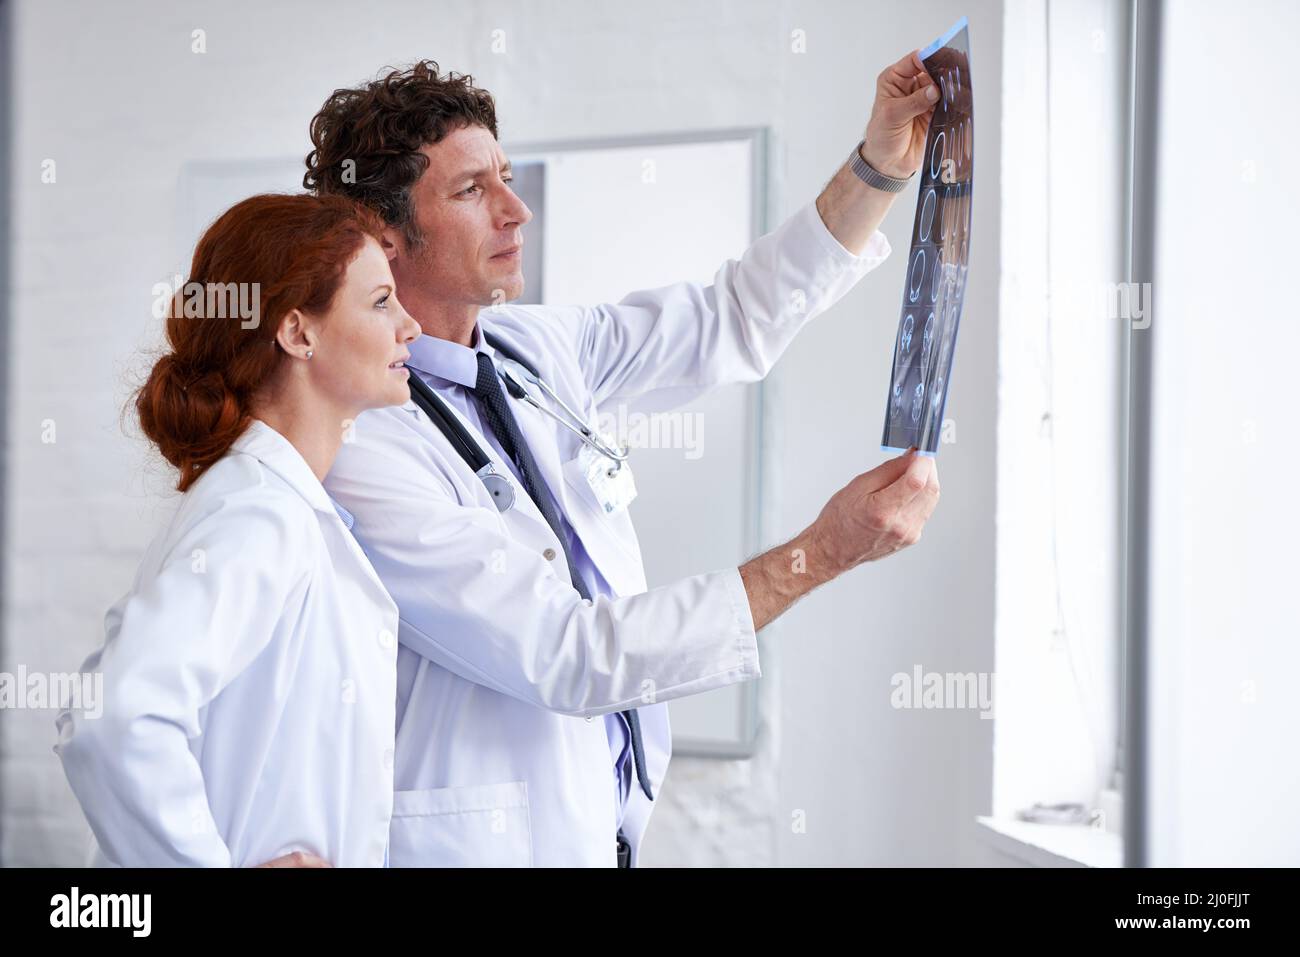 Imparare qualcosa di nuovo ogni giorno. Shot di due medici che valutano un paziente radiologico in ospedale. Foto Stock